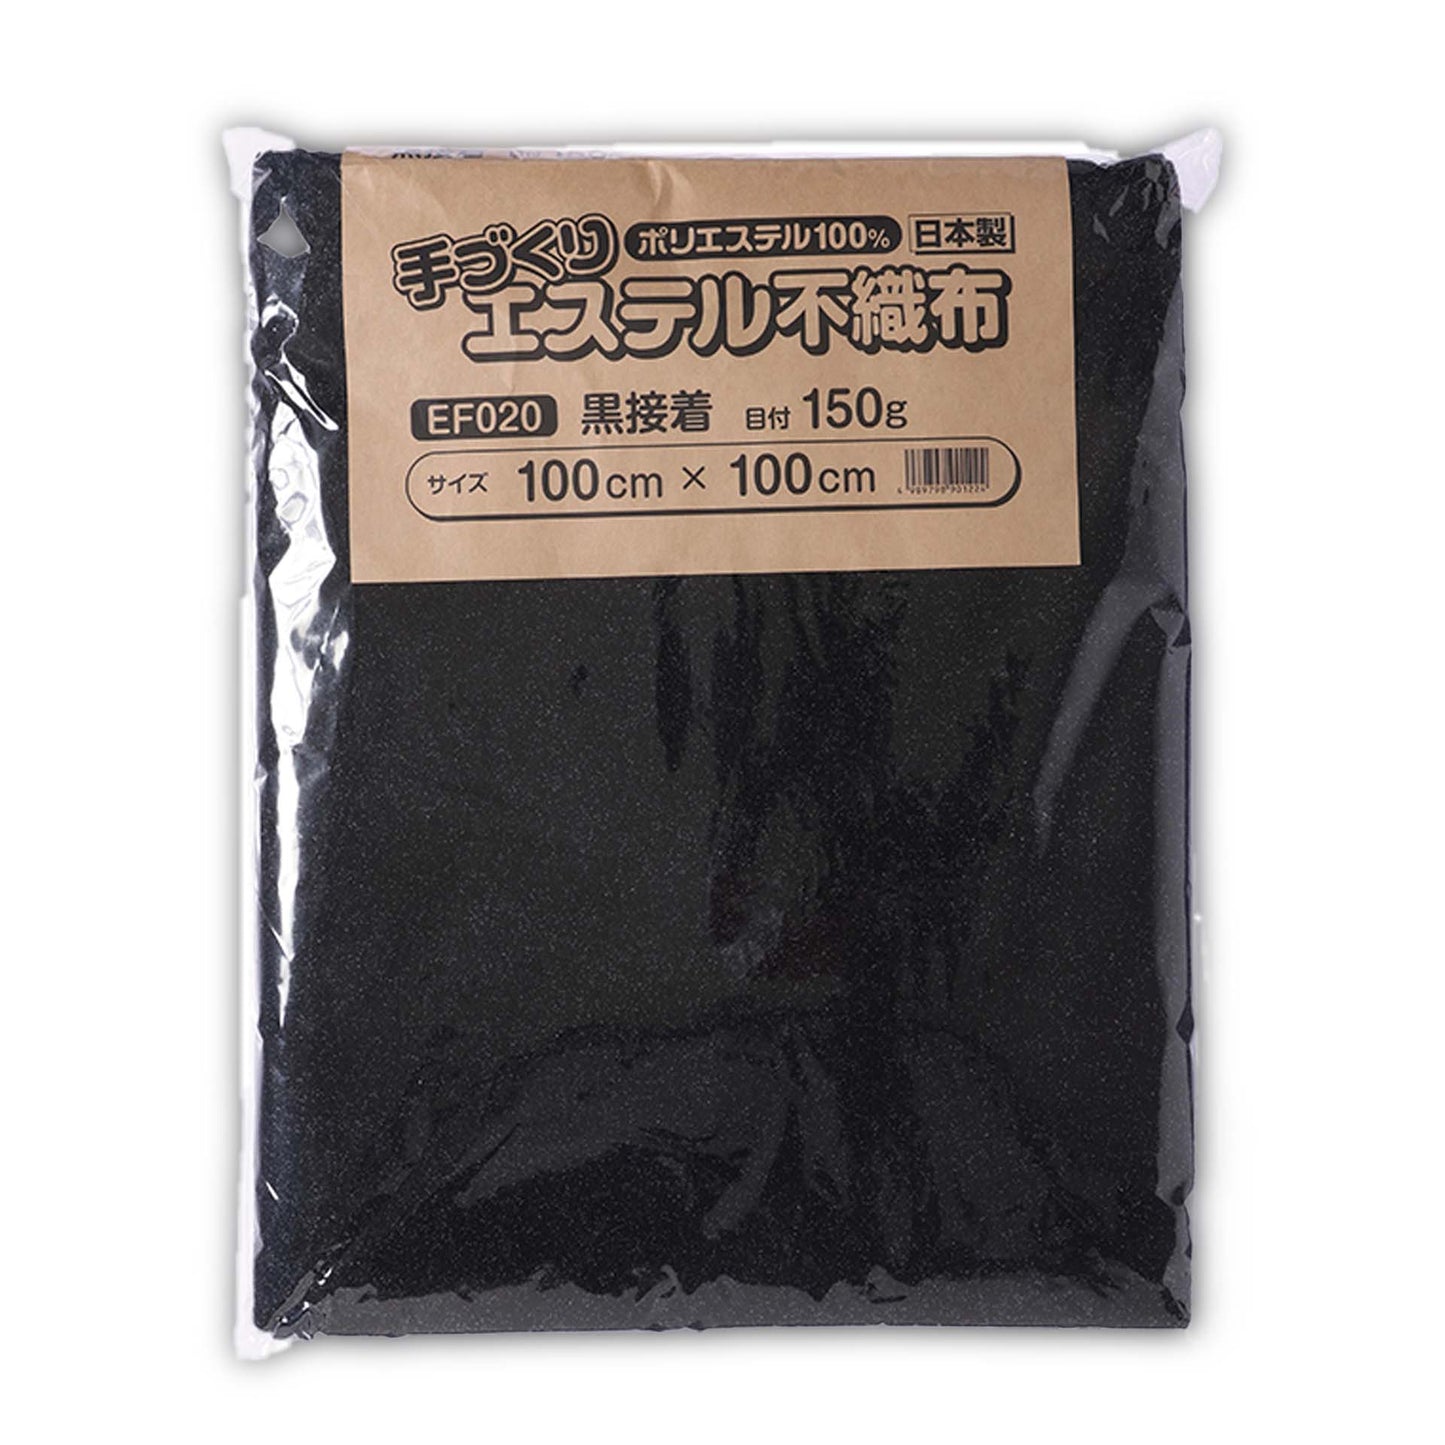 キルト芯 接着芯 黒 片面 EF020  日本製 パッチワーク 小物 ドミット芯  【鞆のふとん家】